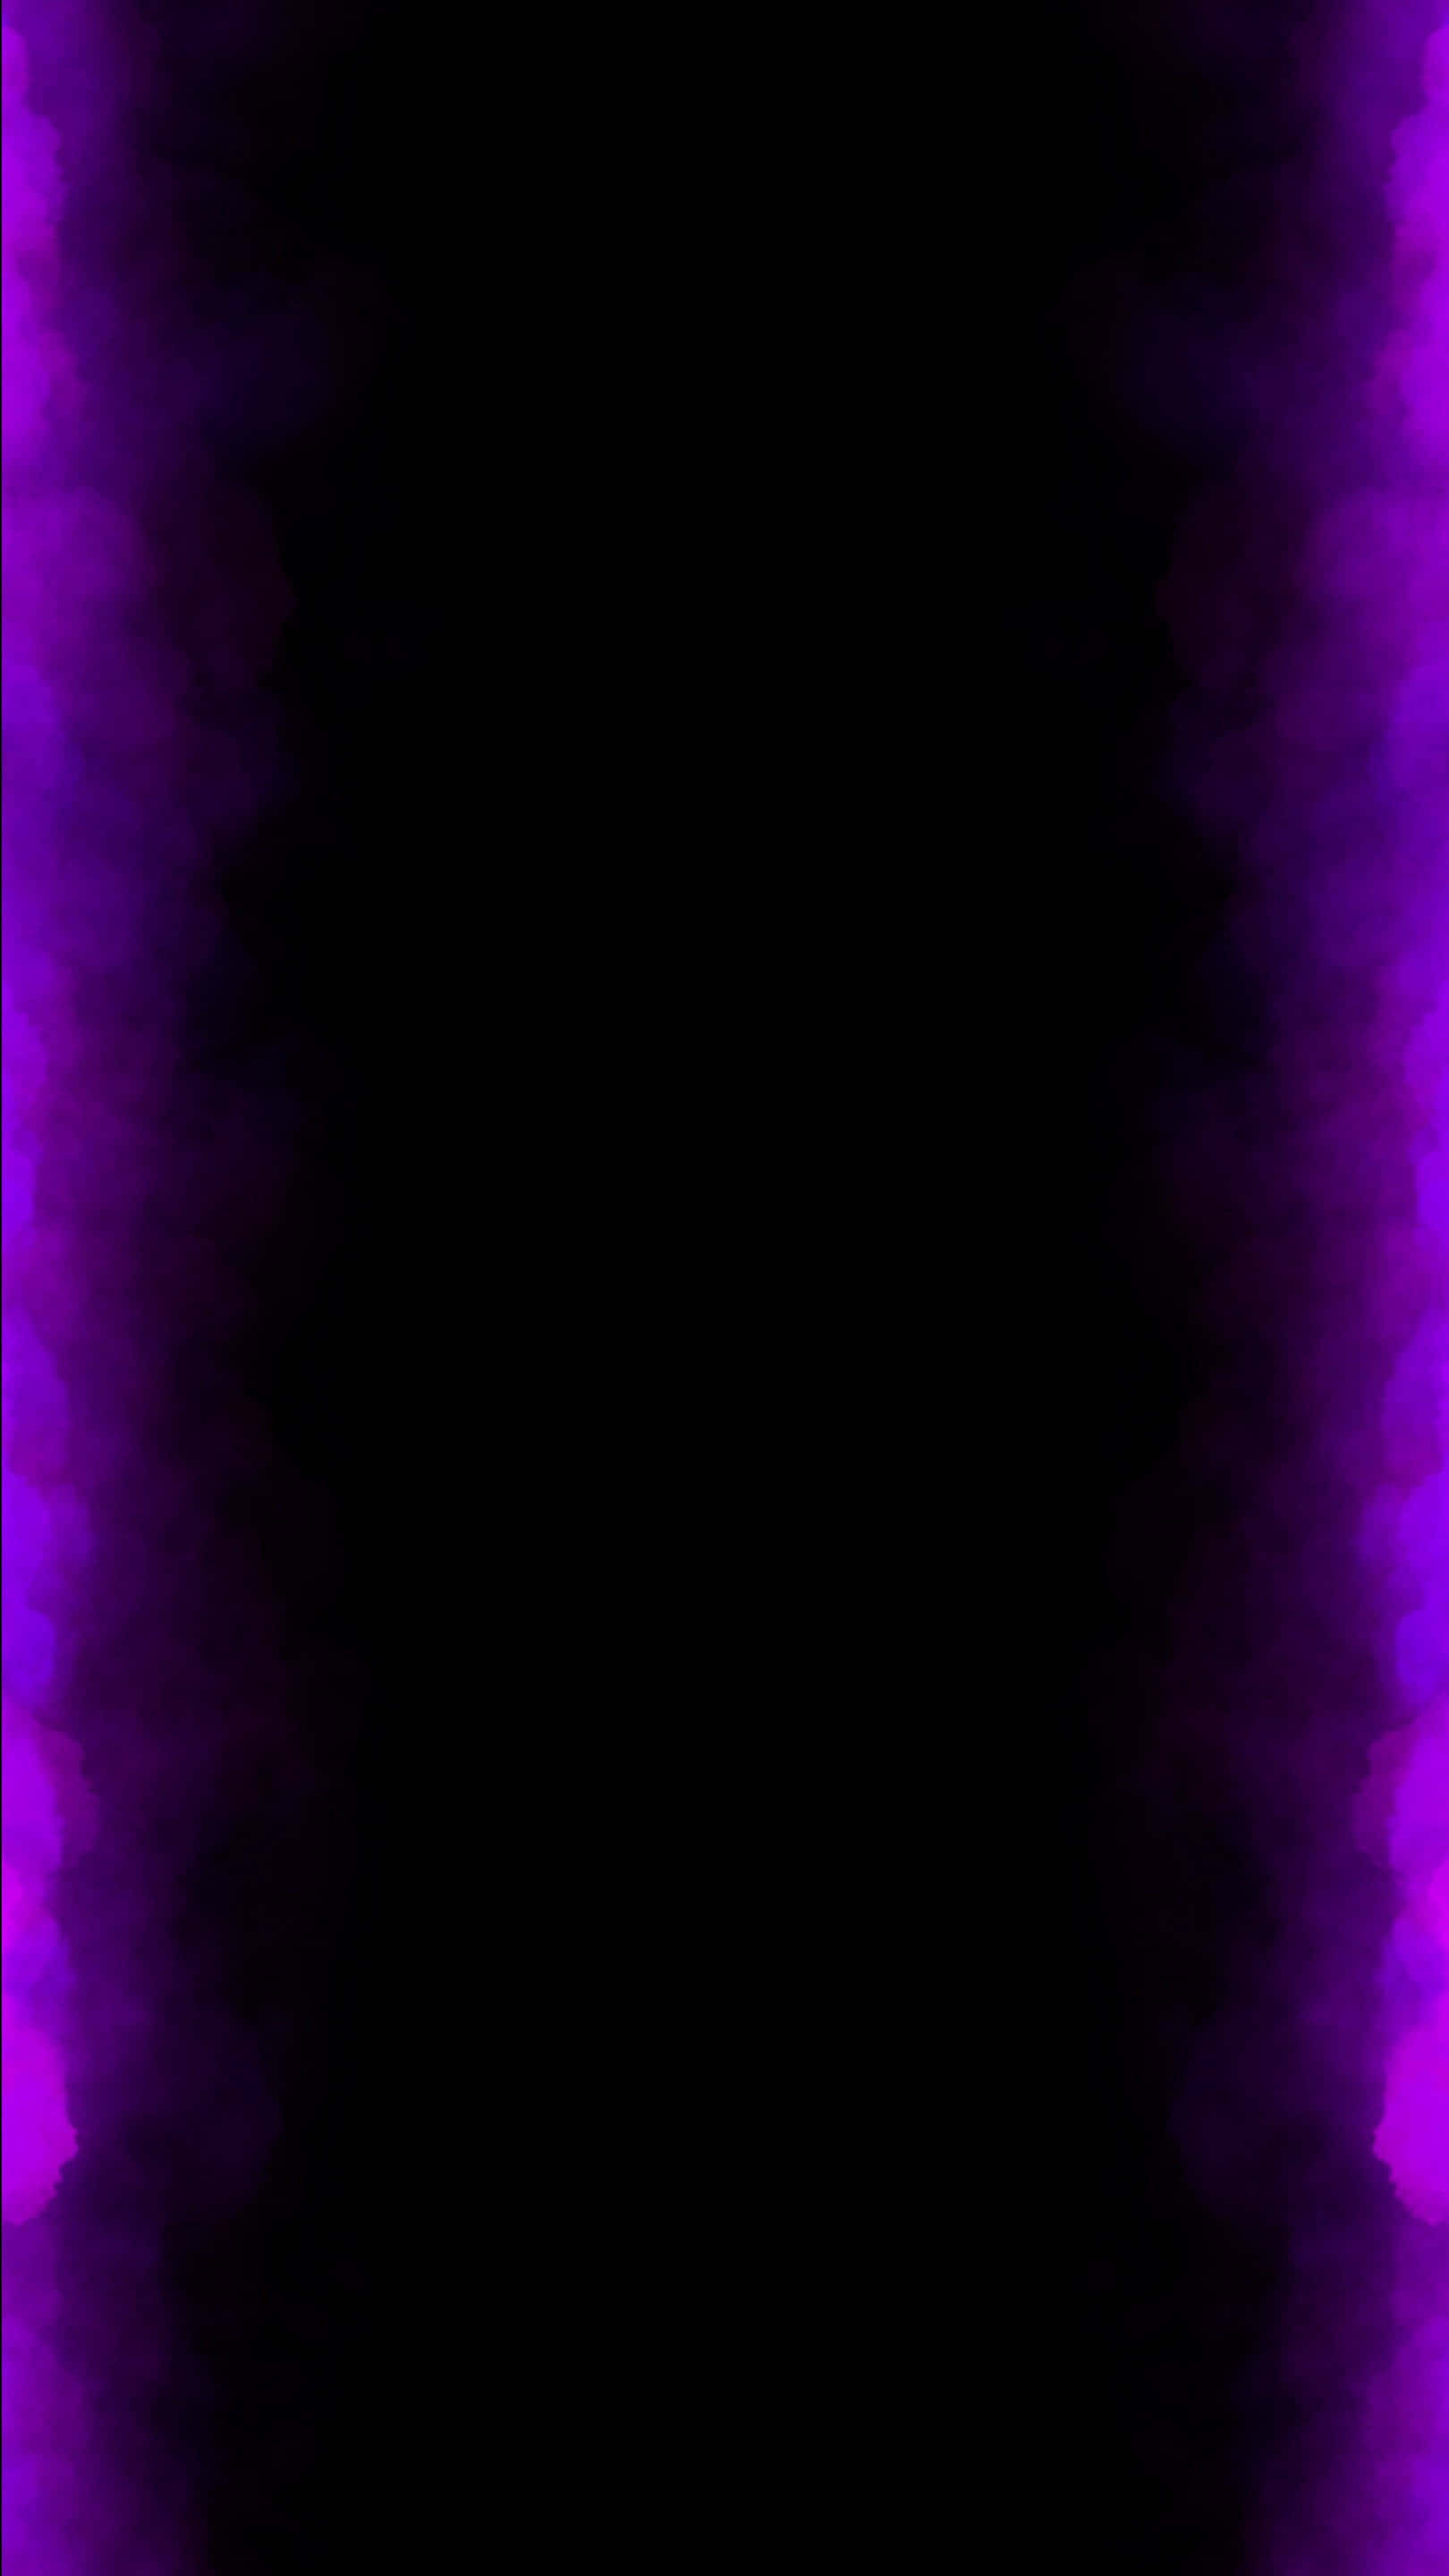 Mesmerizing Purple Phone Background